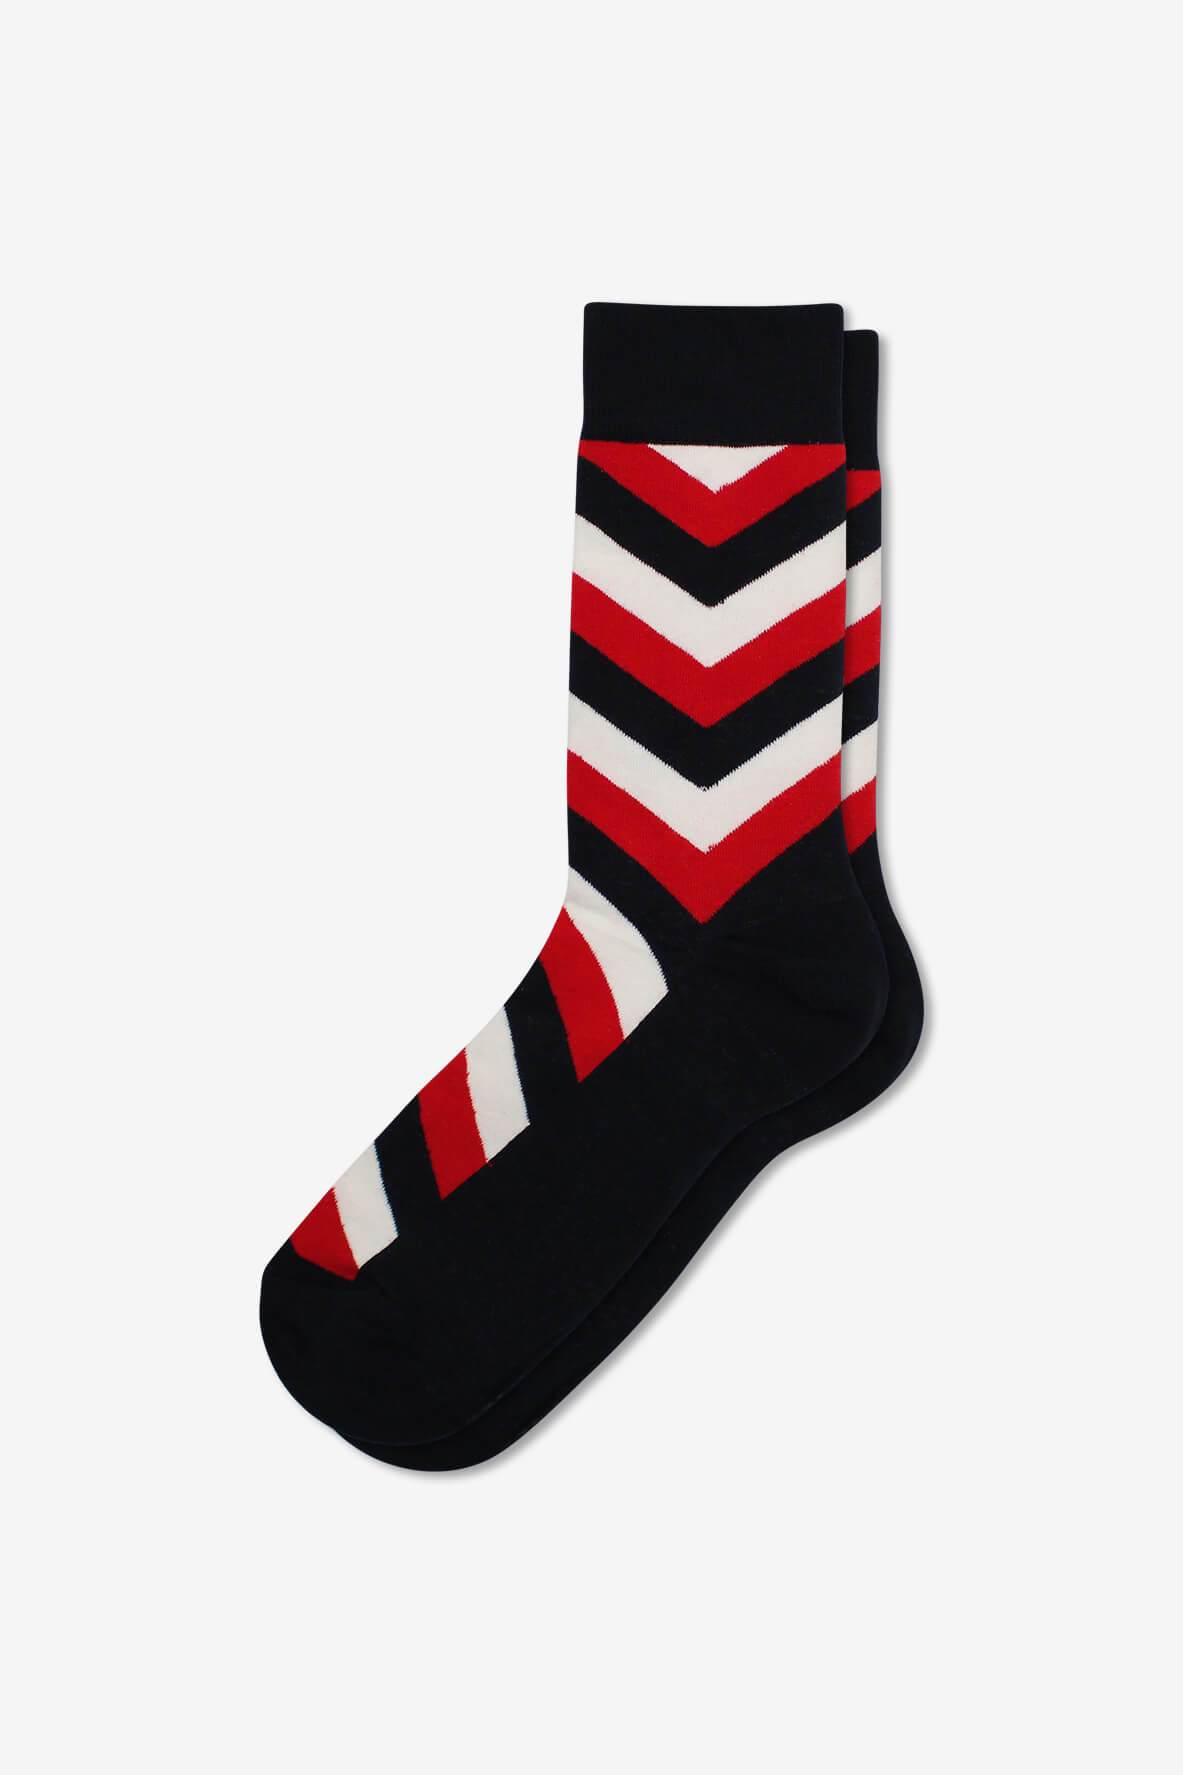 Socks IMG_5378, socks, GoTie